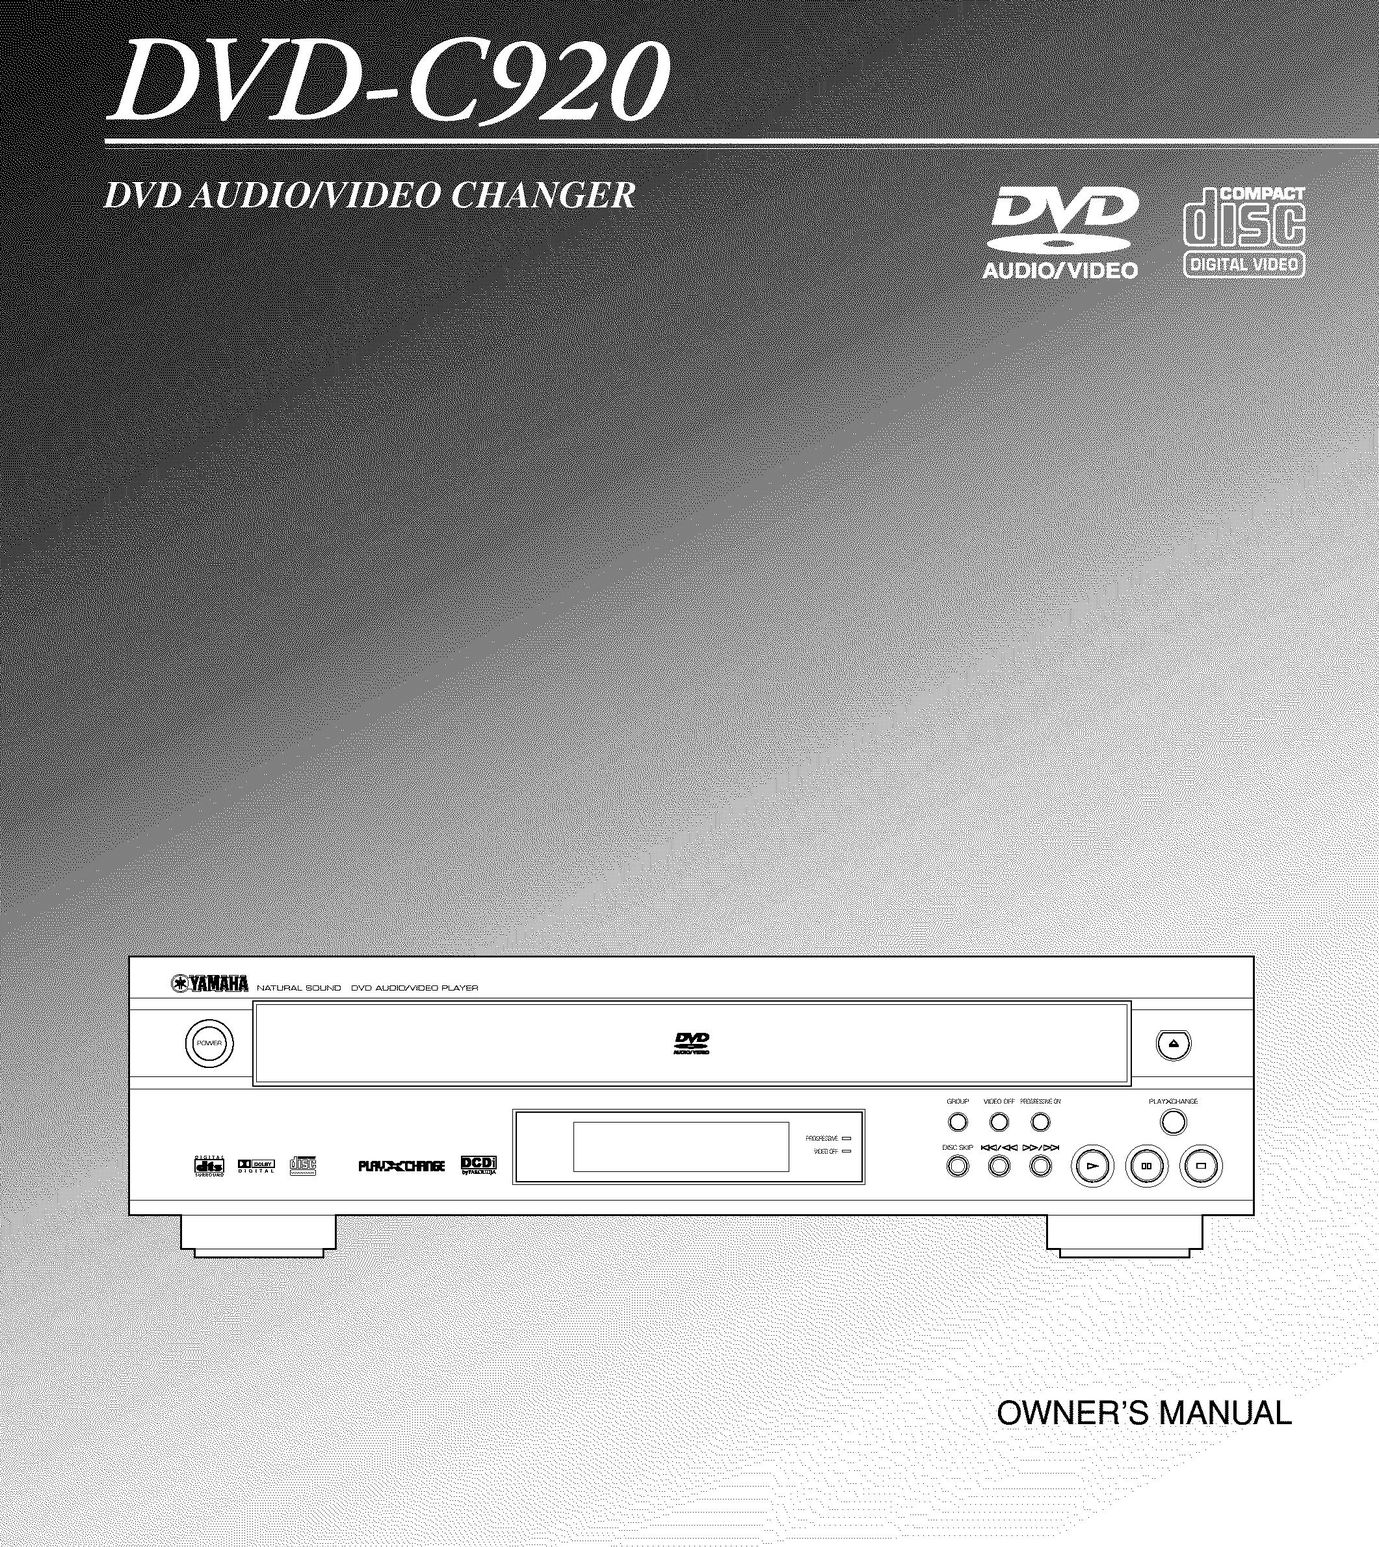 Yamaha DVD-C920 DVD Player User Manual